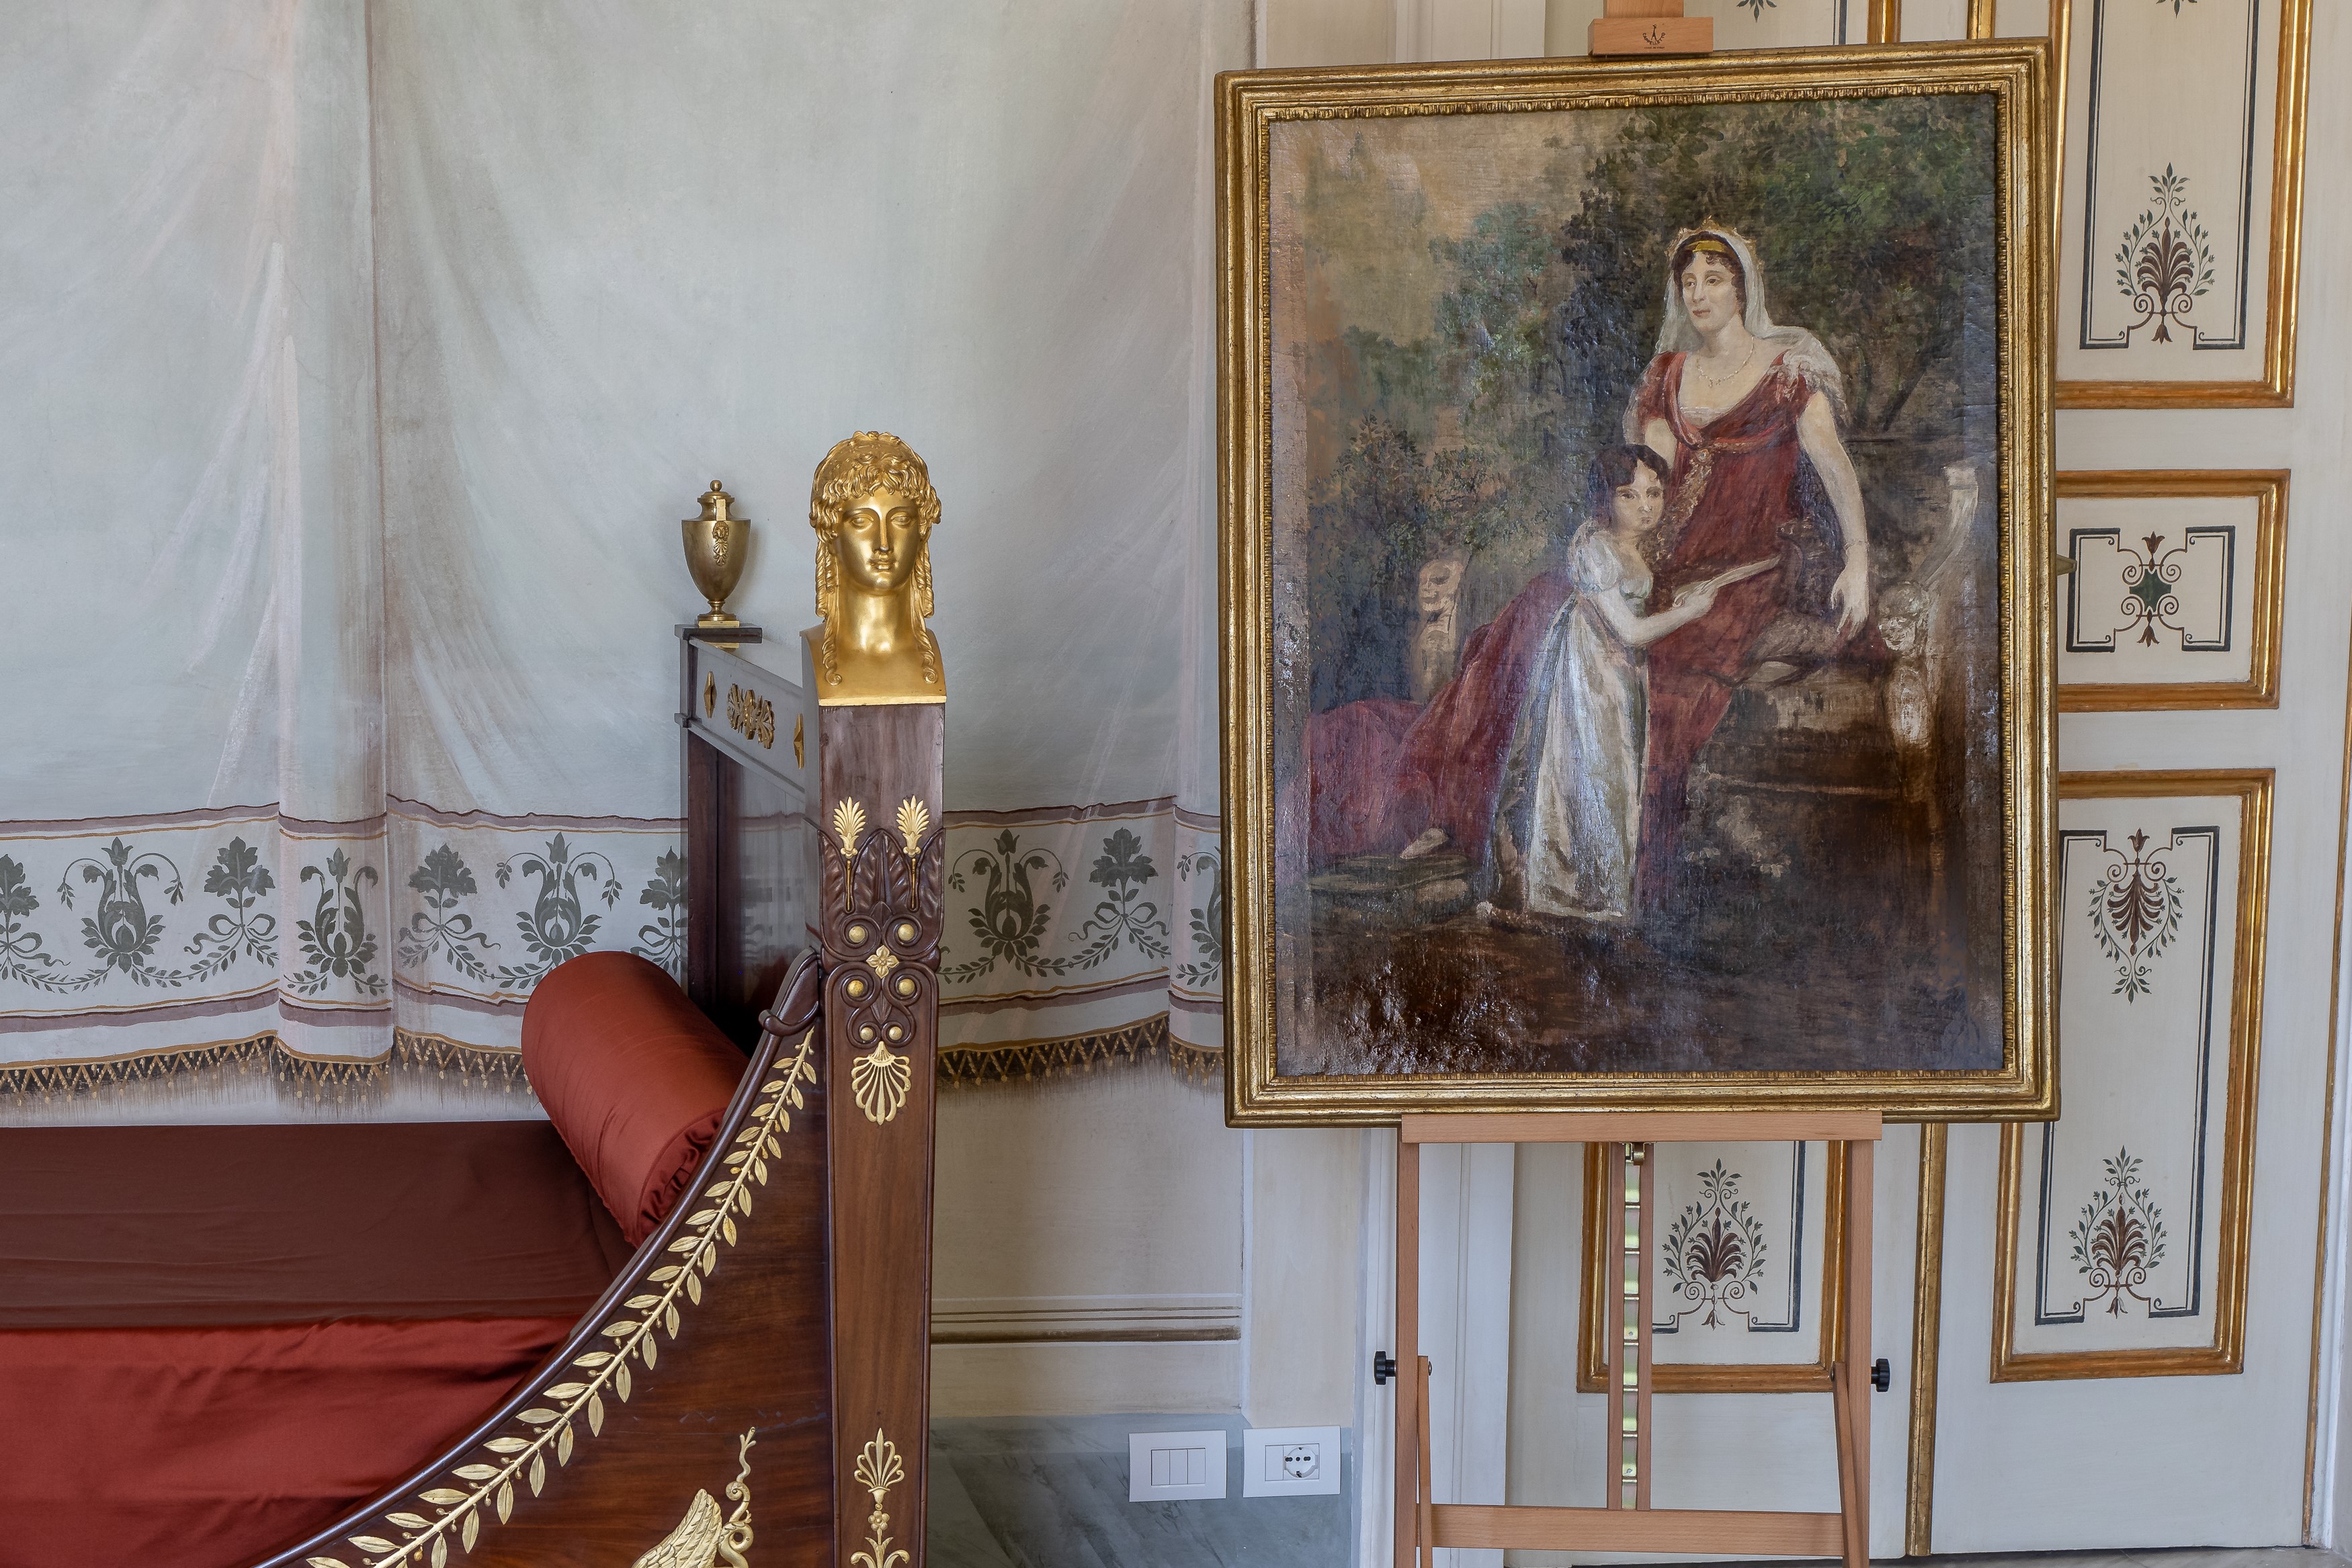 Camera di Felice Villa Reale di Marlia Foto di Giuseppe Panico (2)